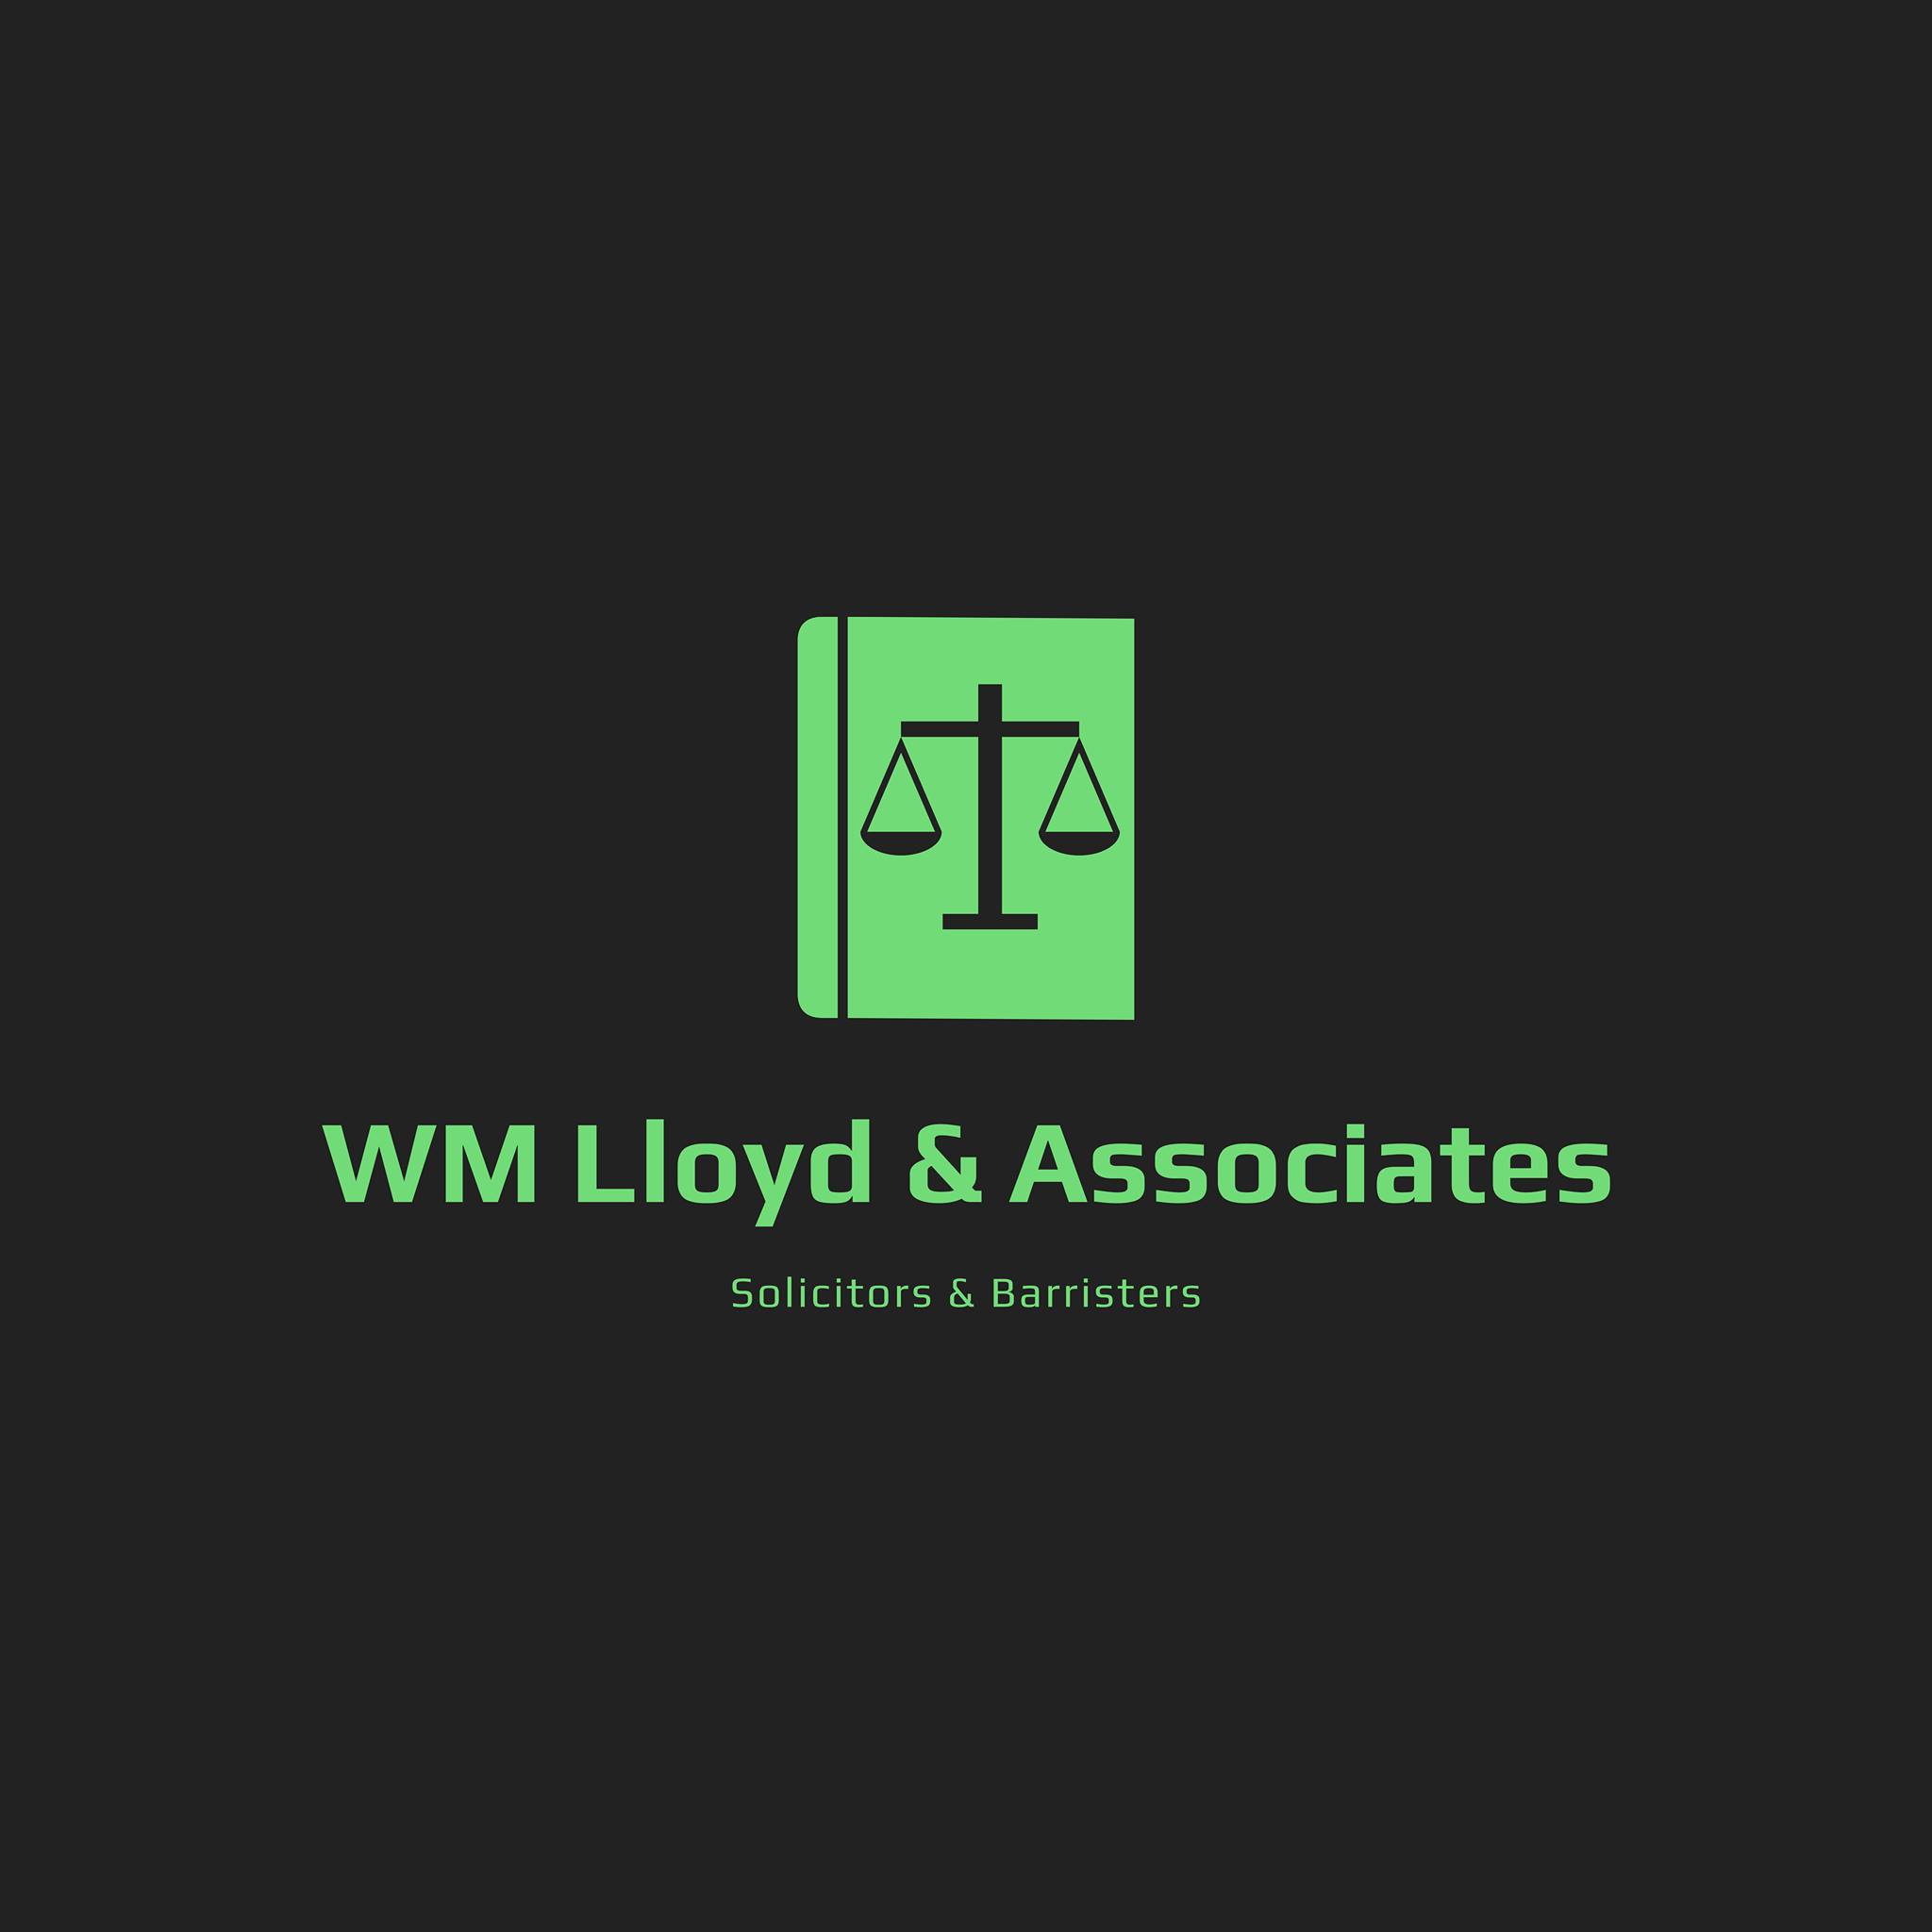 Company logo of WM Lloyd & Associates